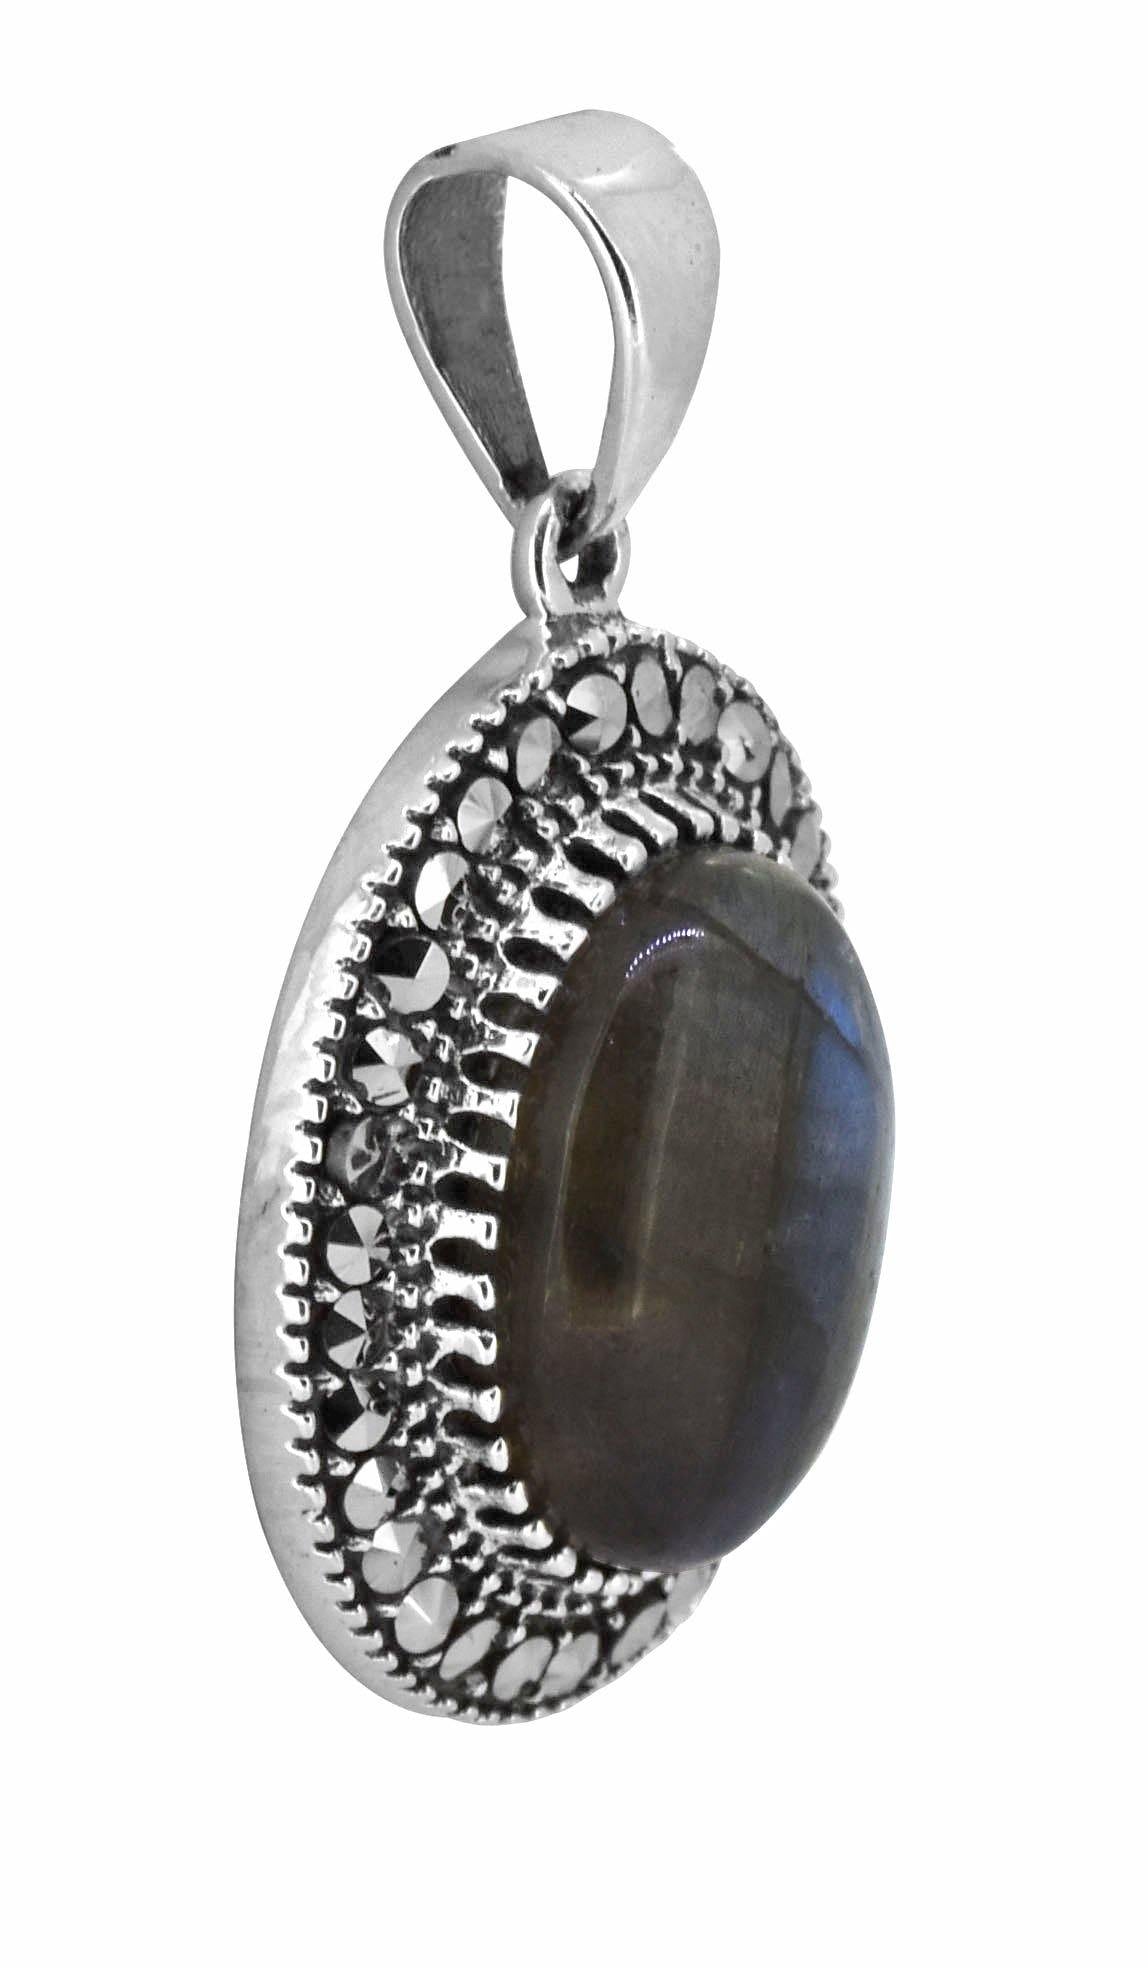 Labradorite Solid 925 Sterling Silver Chain Pendant Jewelry - YoTreasure